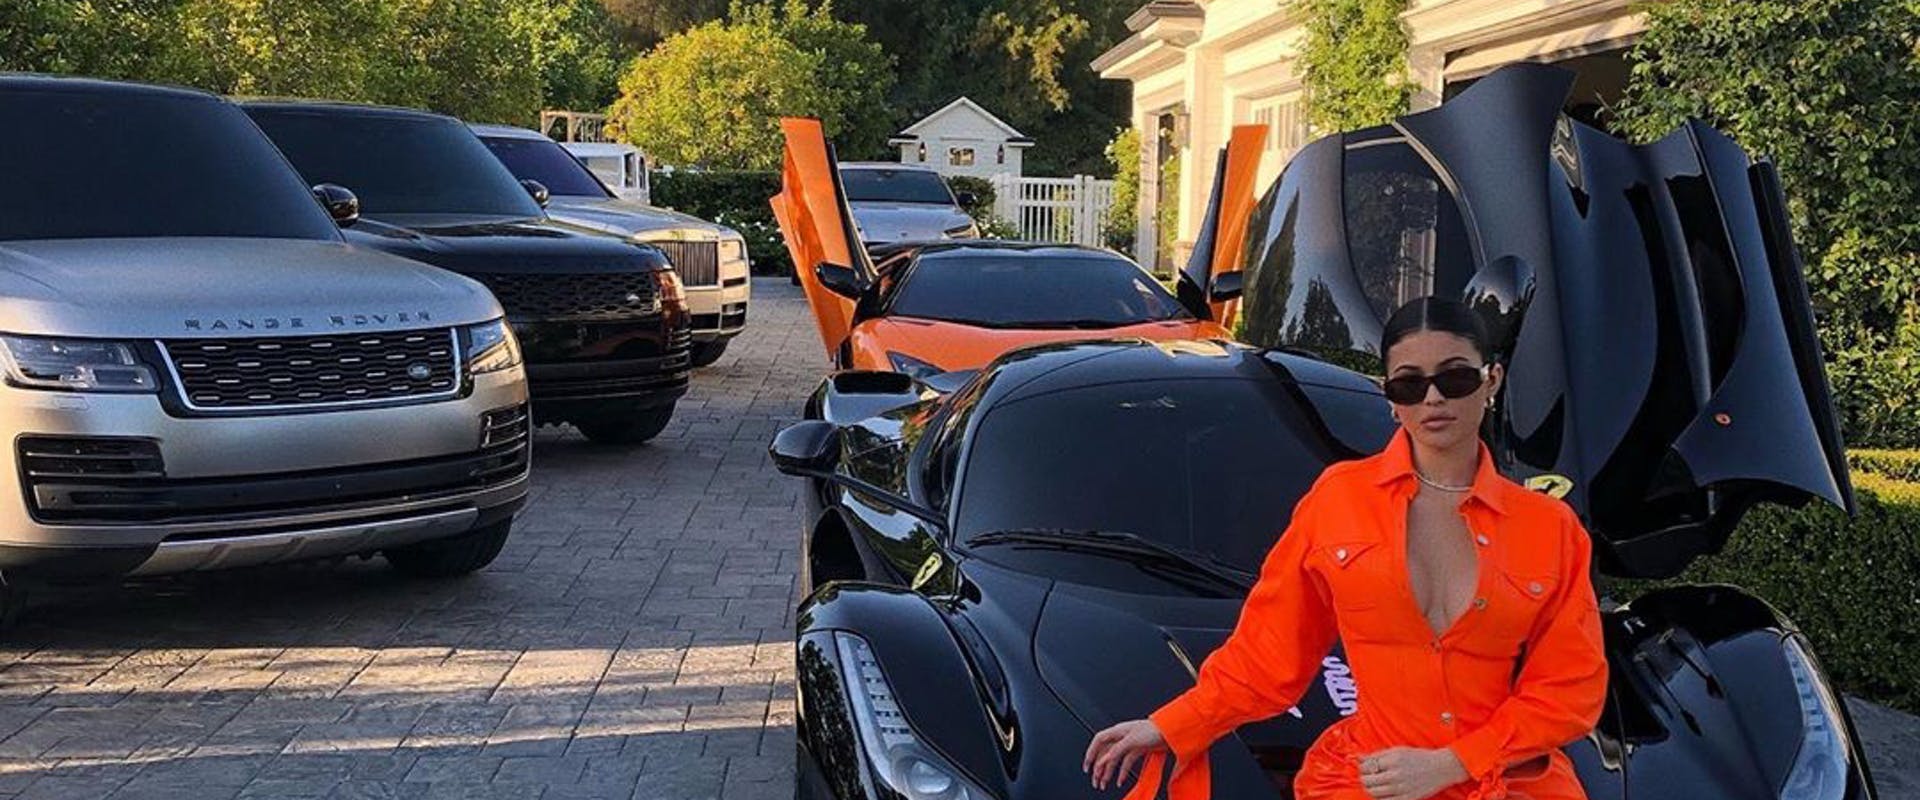  Kylie Jenner tem coleção de carros de luxo, que inclui sua Ferrari LaFerrari preta, presente do rapper Travis Scott